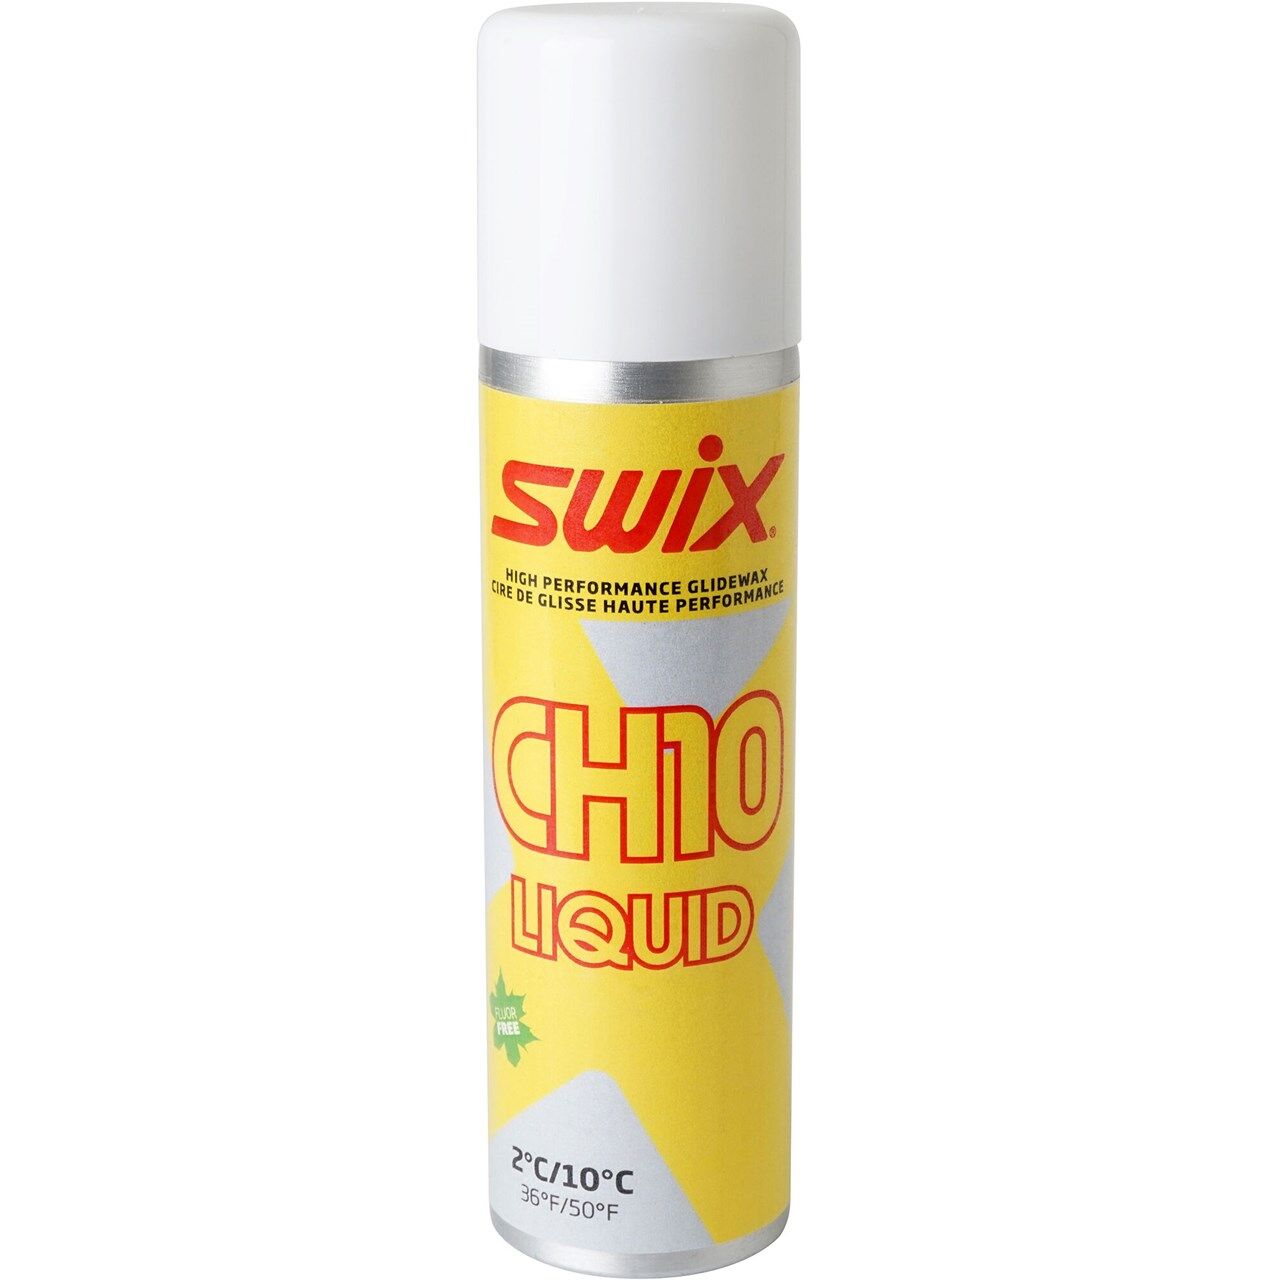 Swix CH10X Liquid 2C/10C (125ml) - Wax